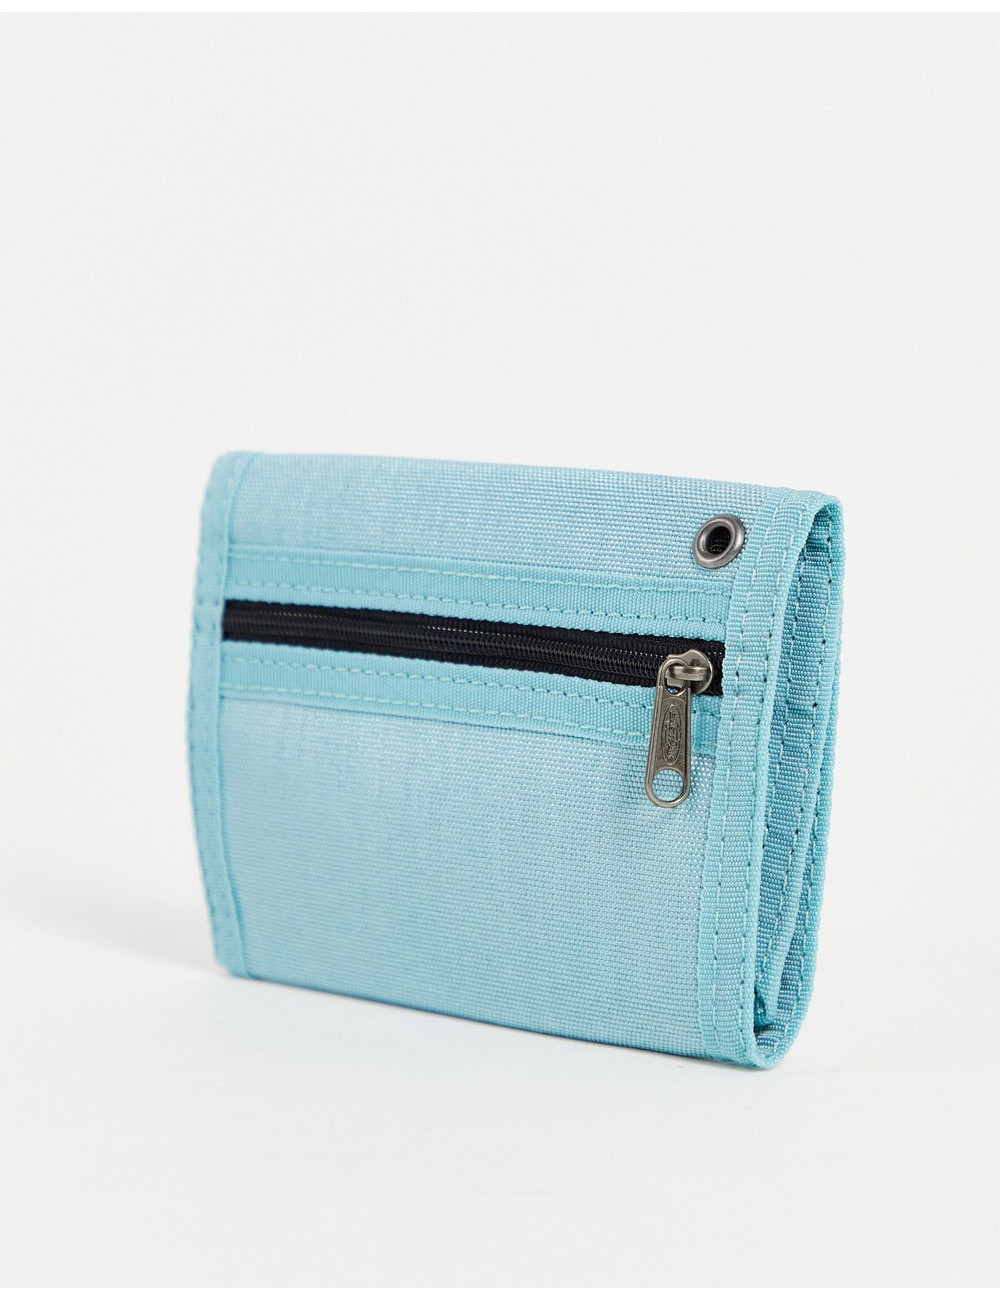 Eastpak single purse in blue